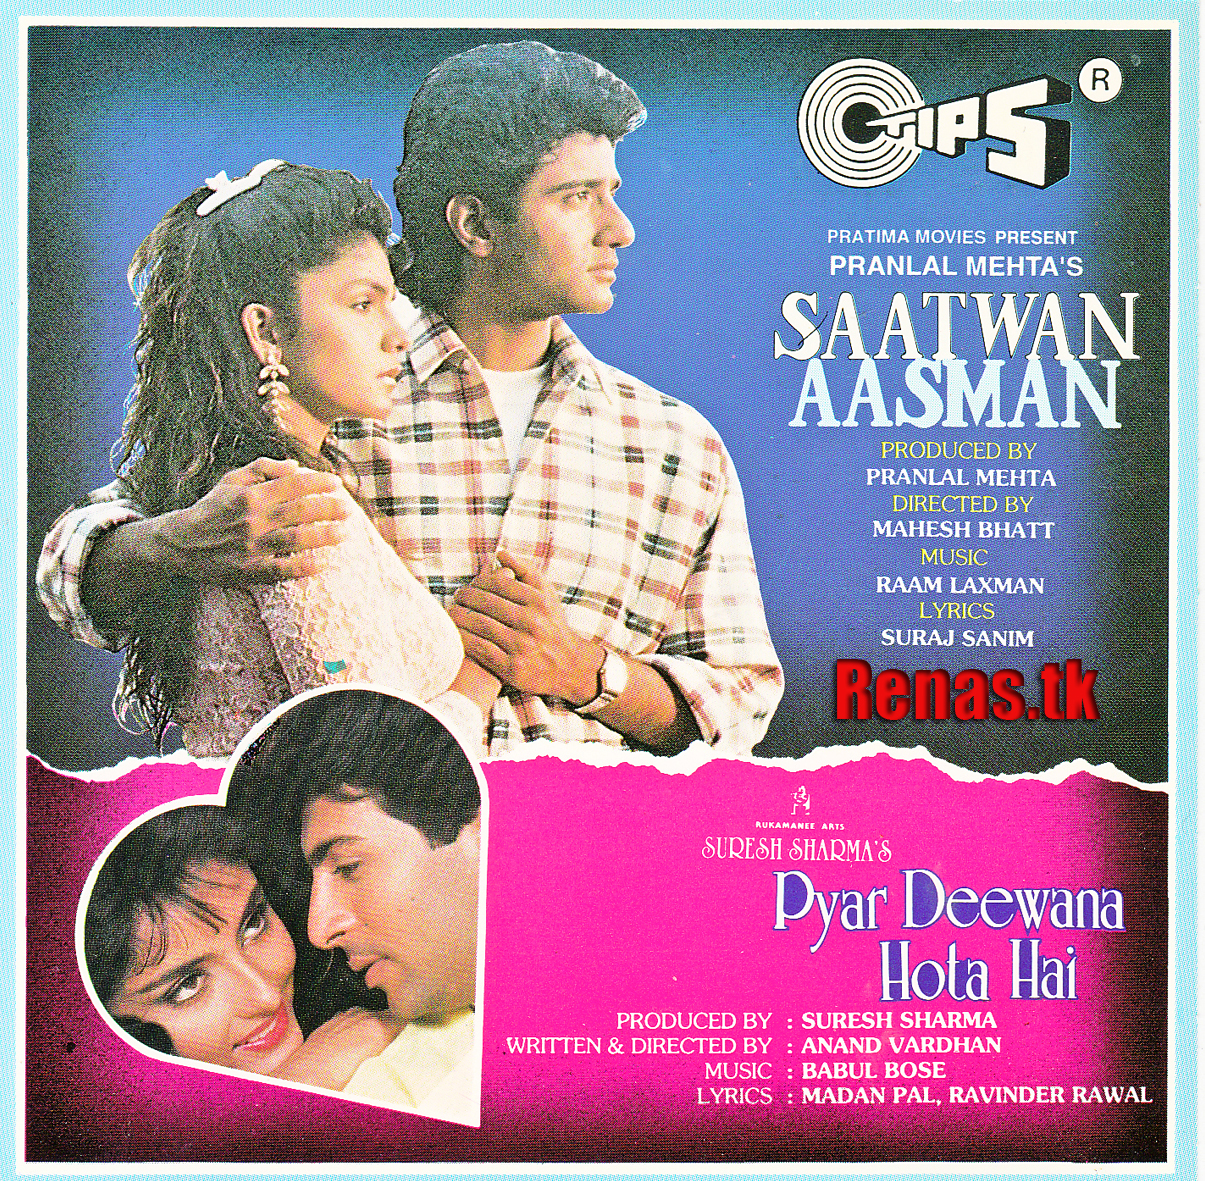 The Saatwan Aasman Movie English Subtitles Free Download